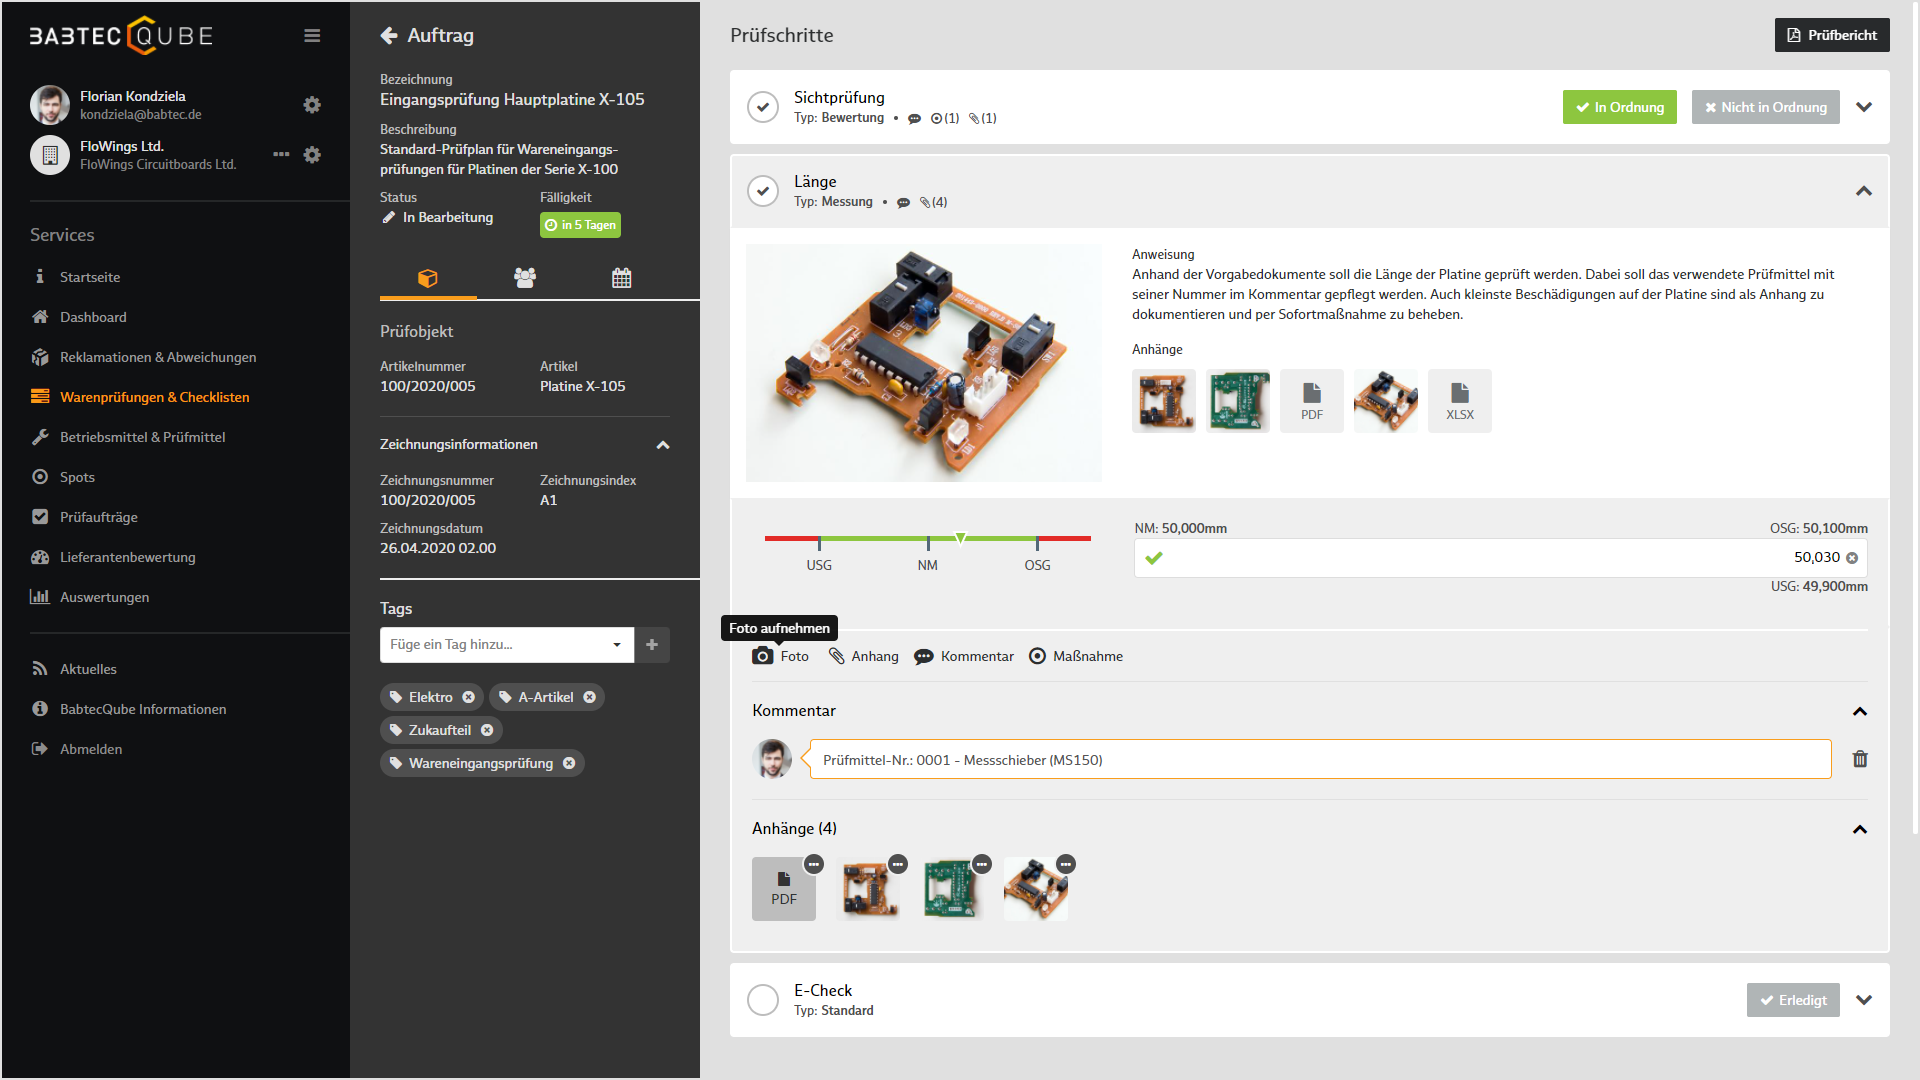 Screenshot von "Warenprüfungen & Checklisten" im BabtecQube